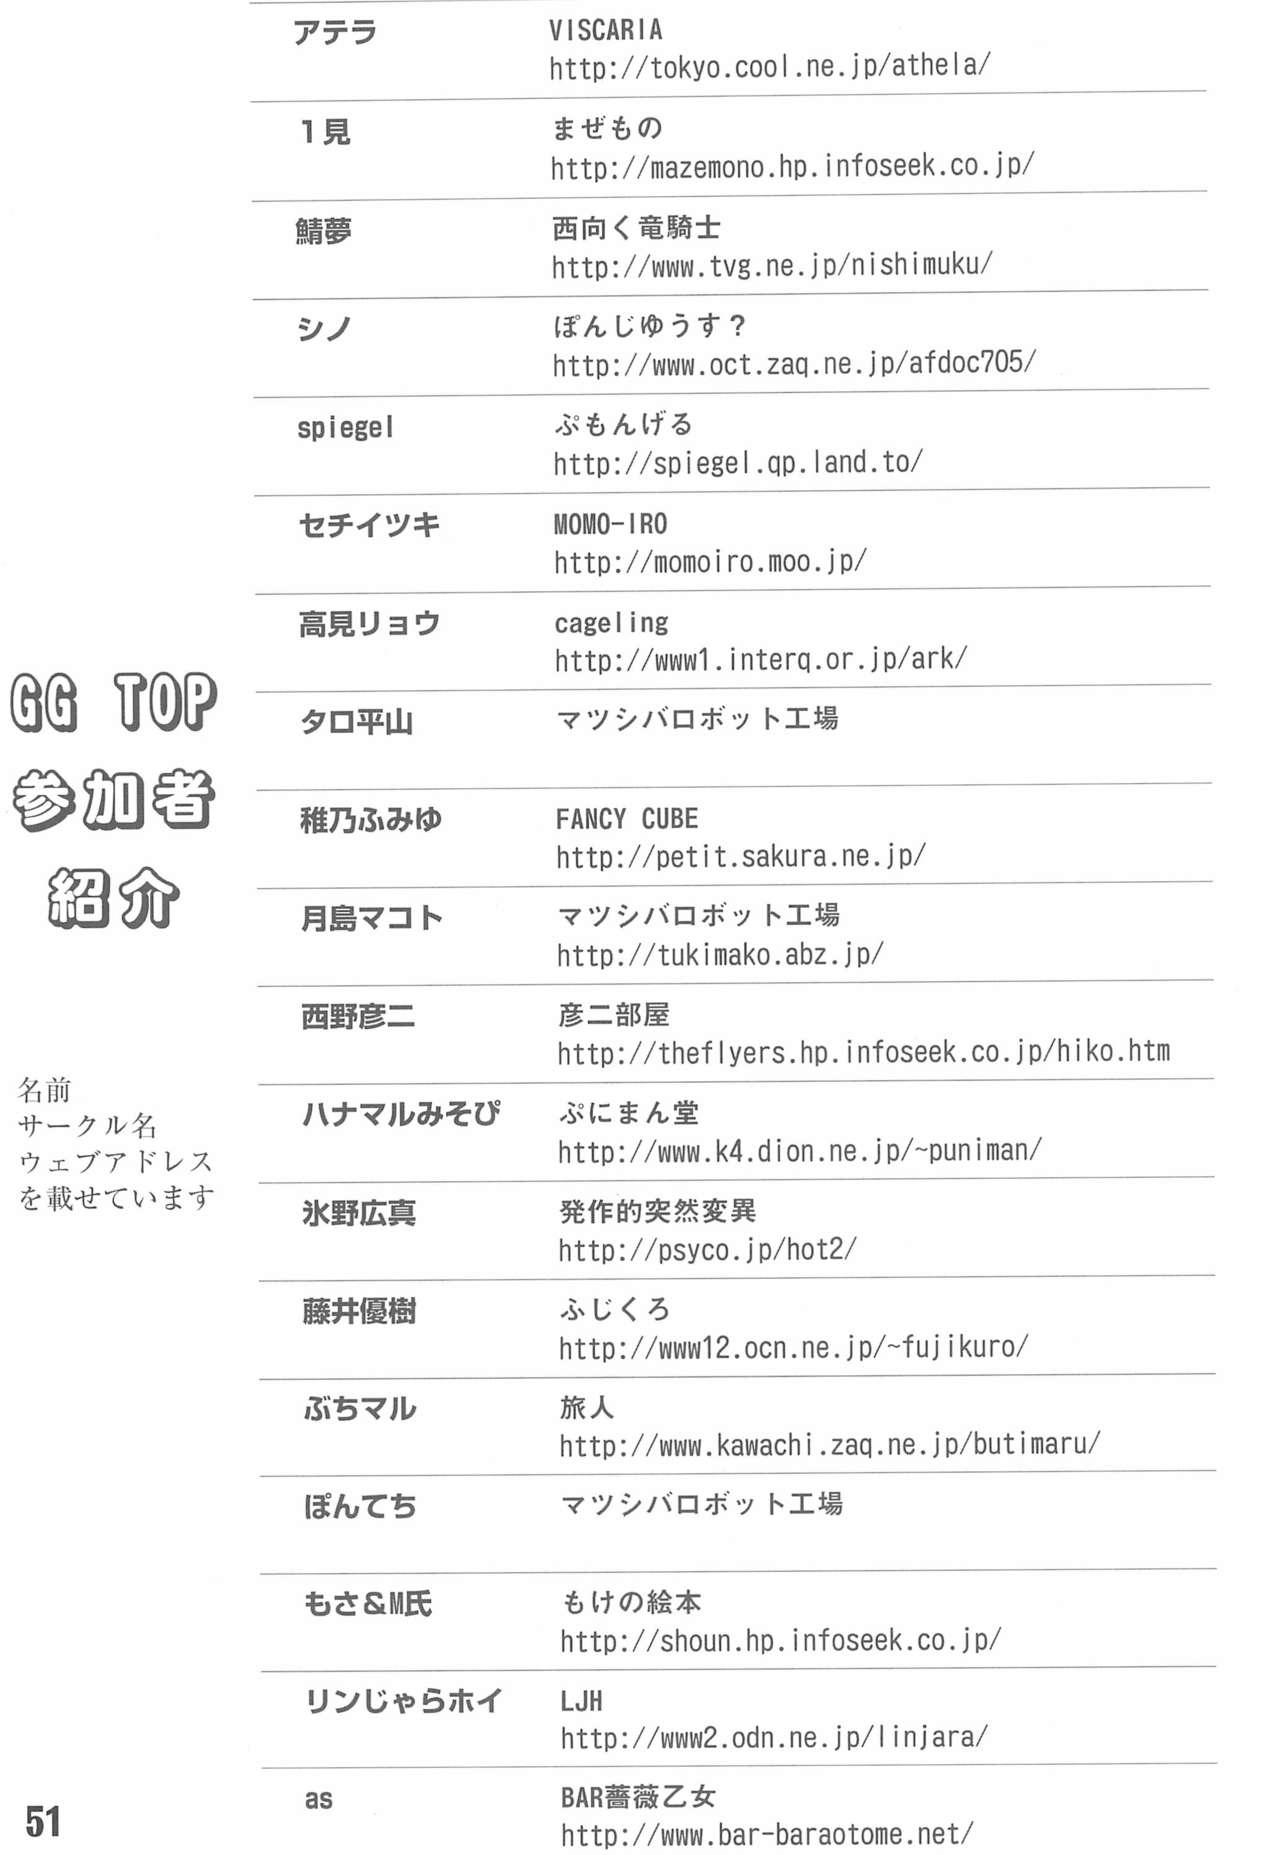 (Bara no Kouchakai) [GG TOP (Various)] Shuukan Watashi no Ojii-chan - Zizii! Every week, Every Zizii (Rozen Maiden) 50